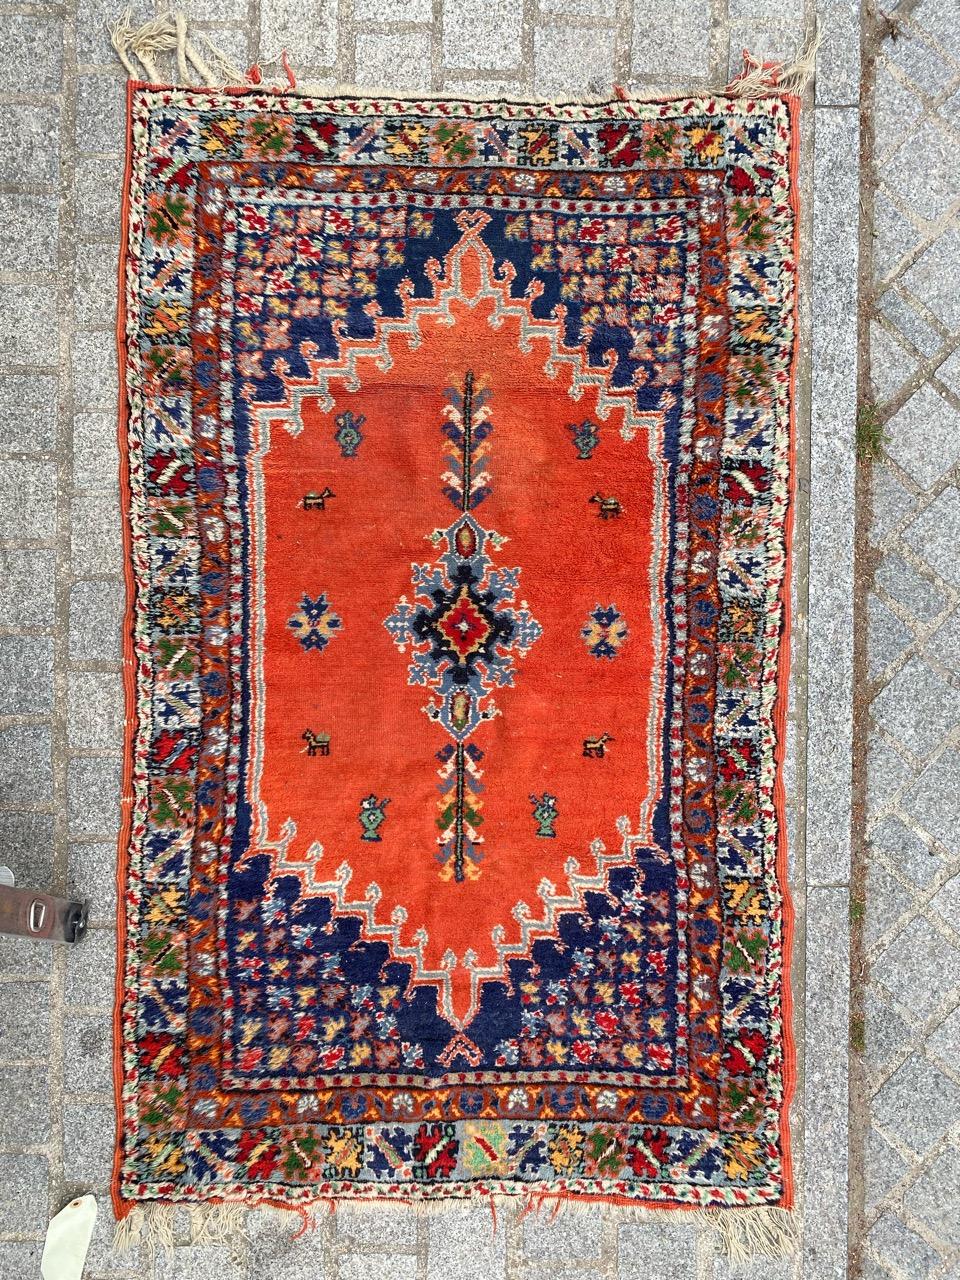 Joli tapis marocain tribal du milieu du siècle avec un beau design géométrique et de belles couleurs, entièrement noué à la main avec du velours de laine sur une base de laine.

✨✨✨
